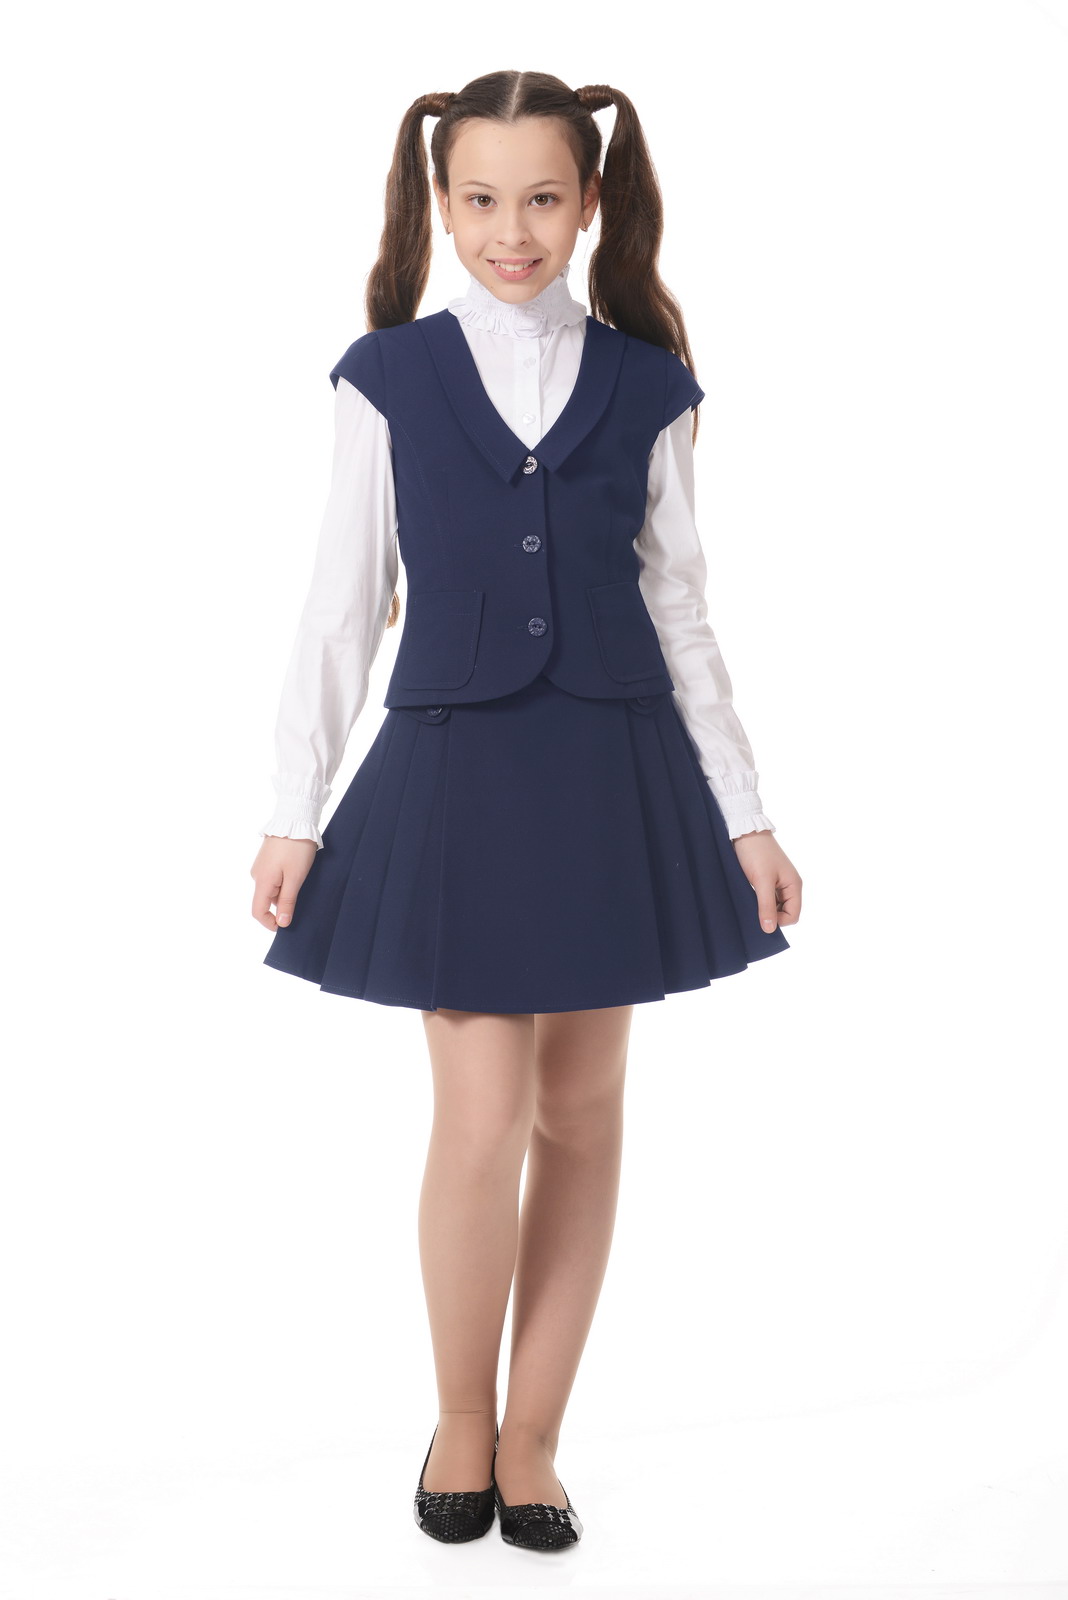 Купить в школу дешево. Школьная юбка для девочек синяя скайлайк.